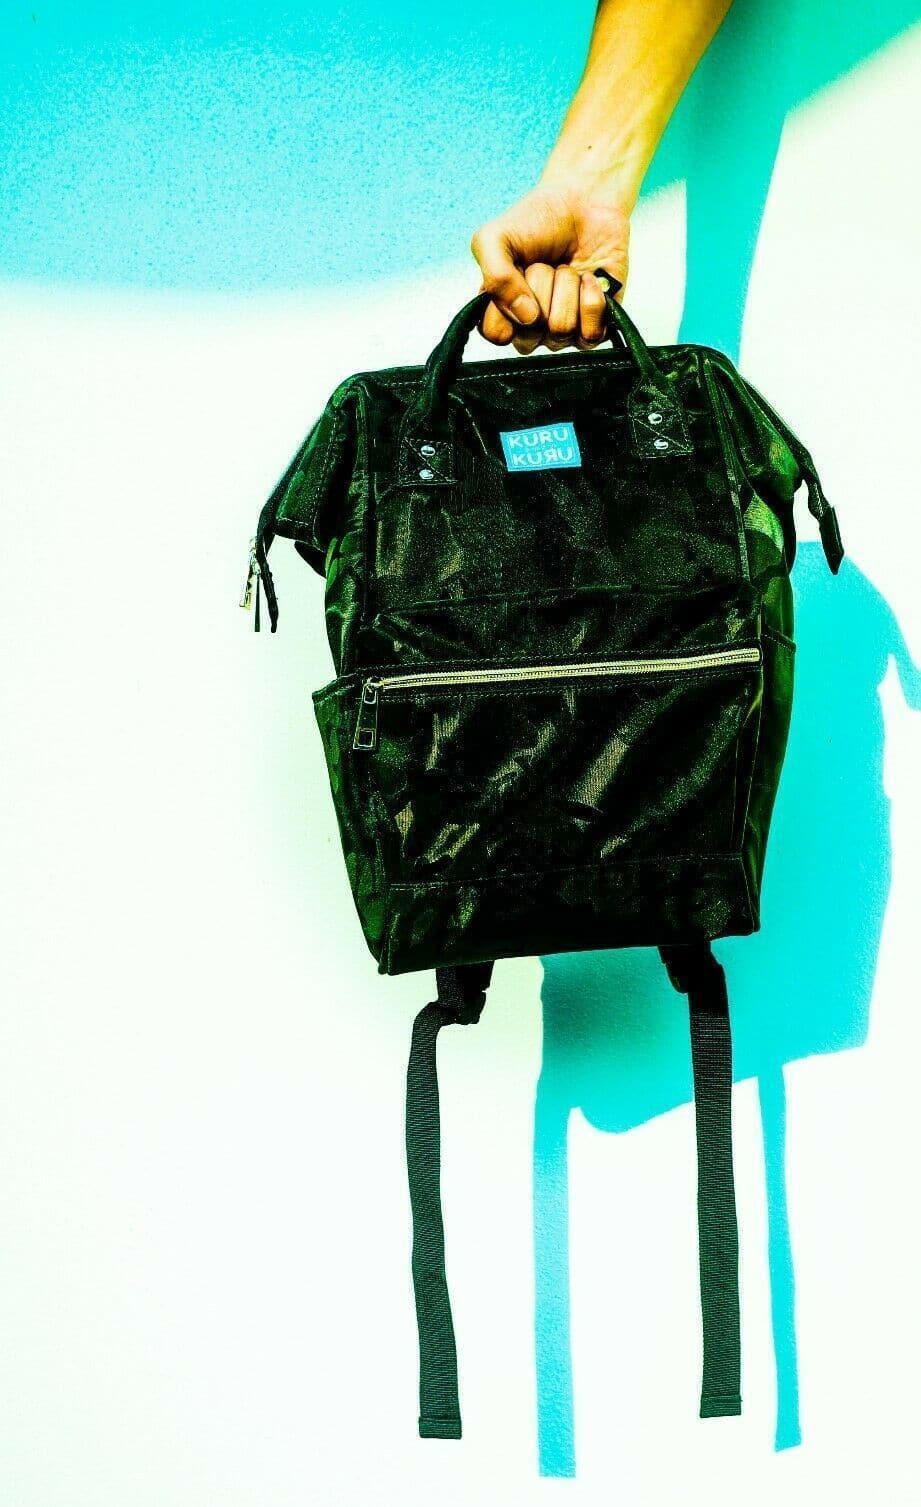 Kuru Kuru クールクール Vitality Medium Backpack Bag Camo Green Twill VM-81107